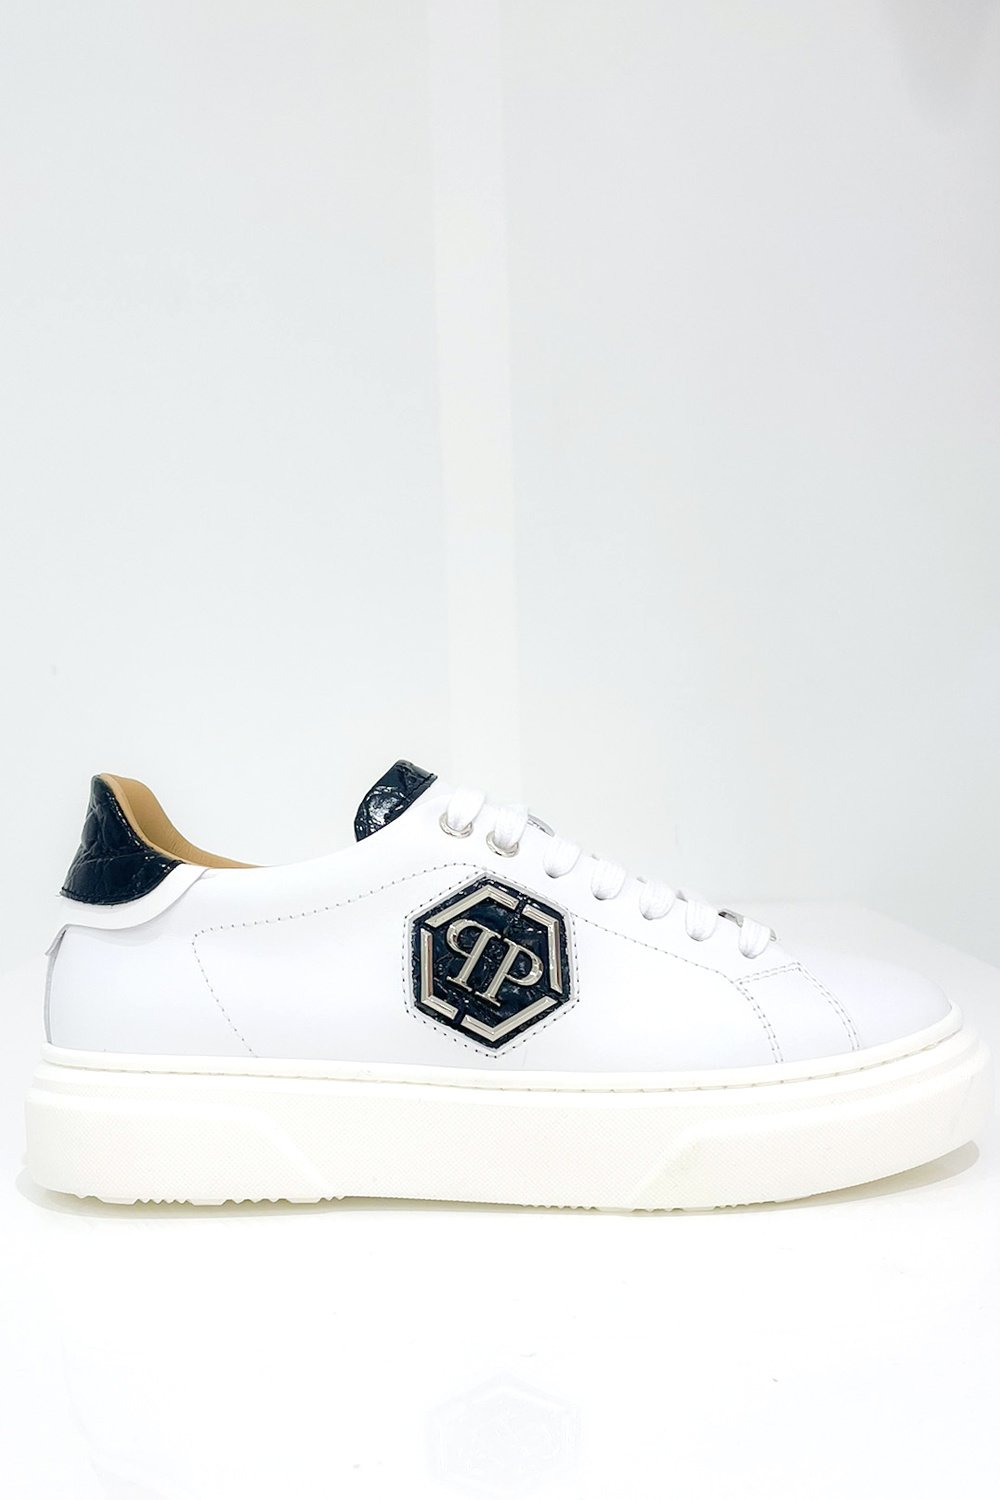 Verbinding Bewust worden wastafel Philipp Plein sneaker zilver PP logo en croco details Wit - Dresscode